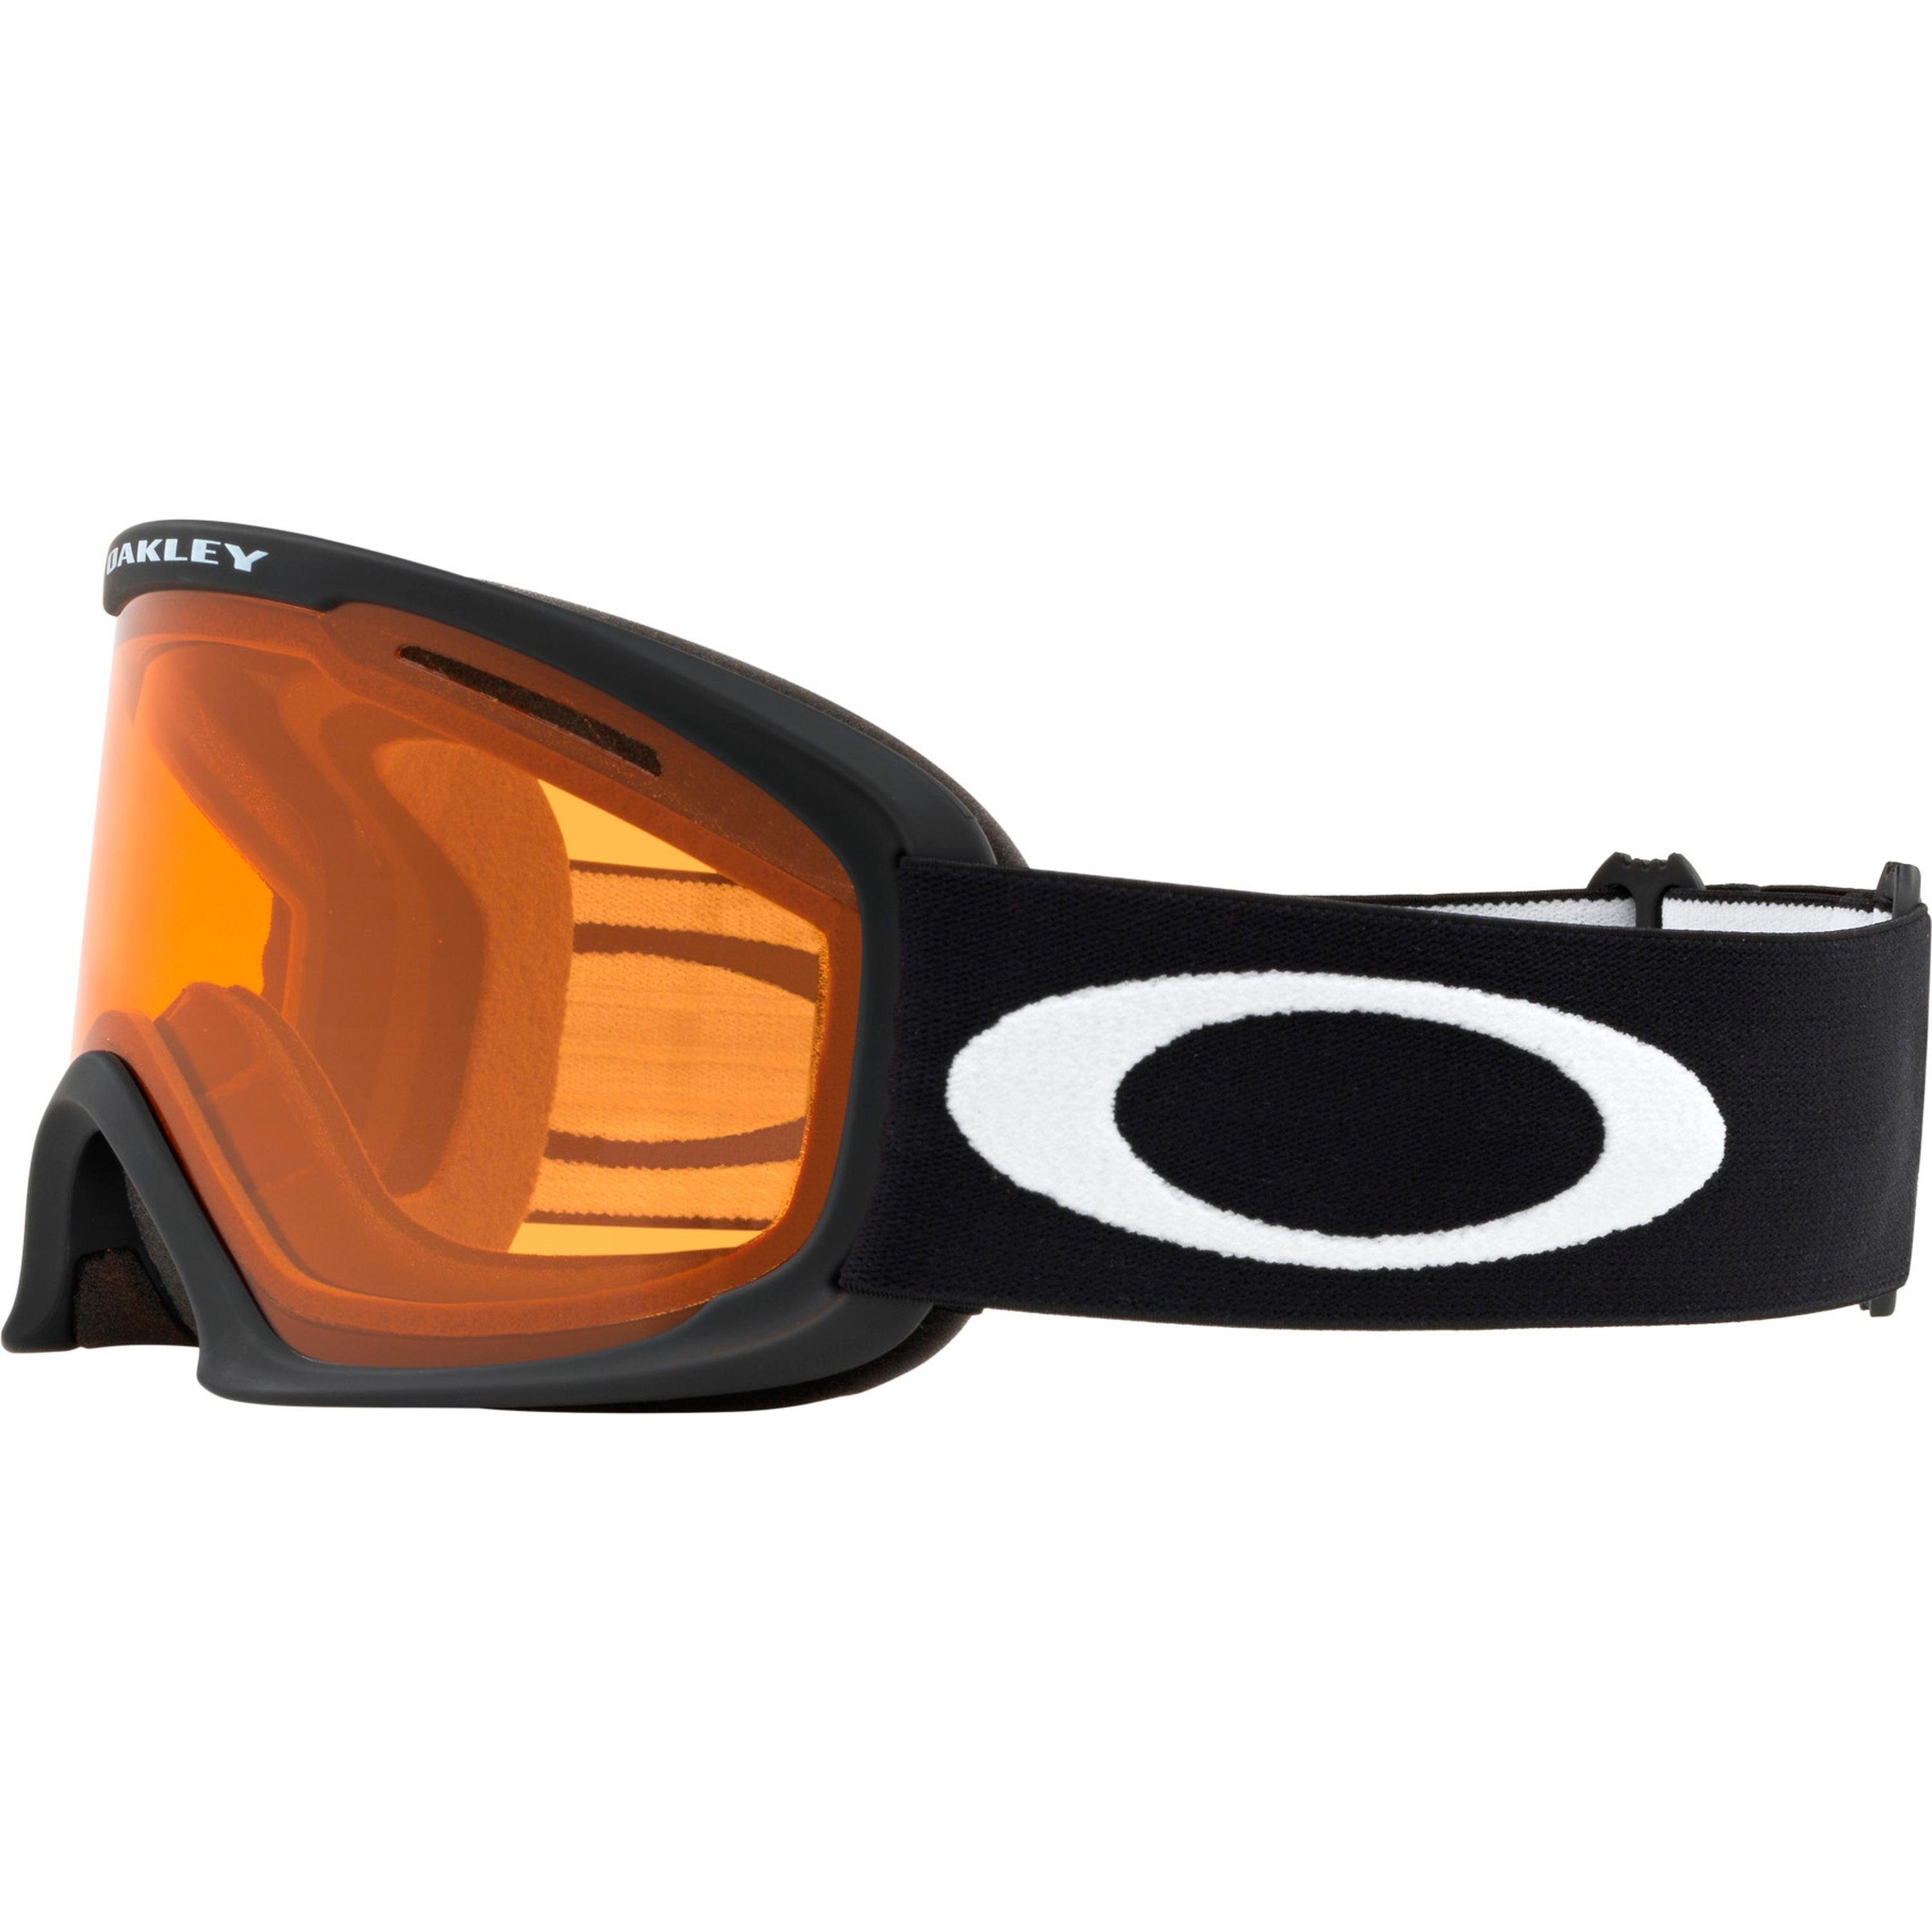 Oakley Skibrille L O-FRAME PRO 2.0